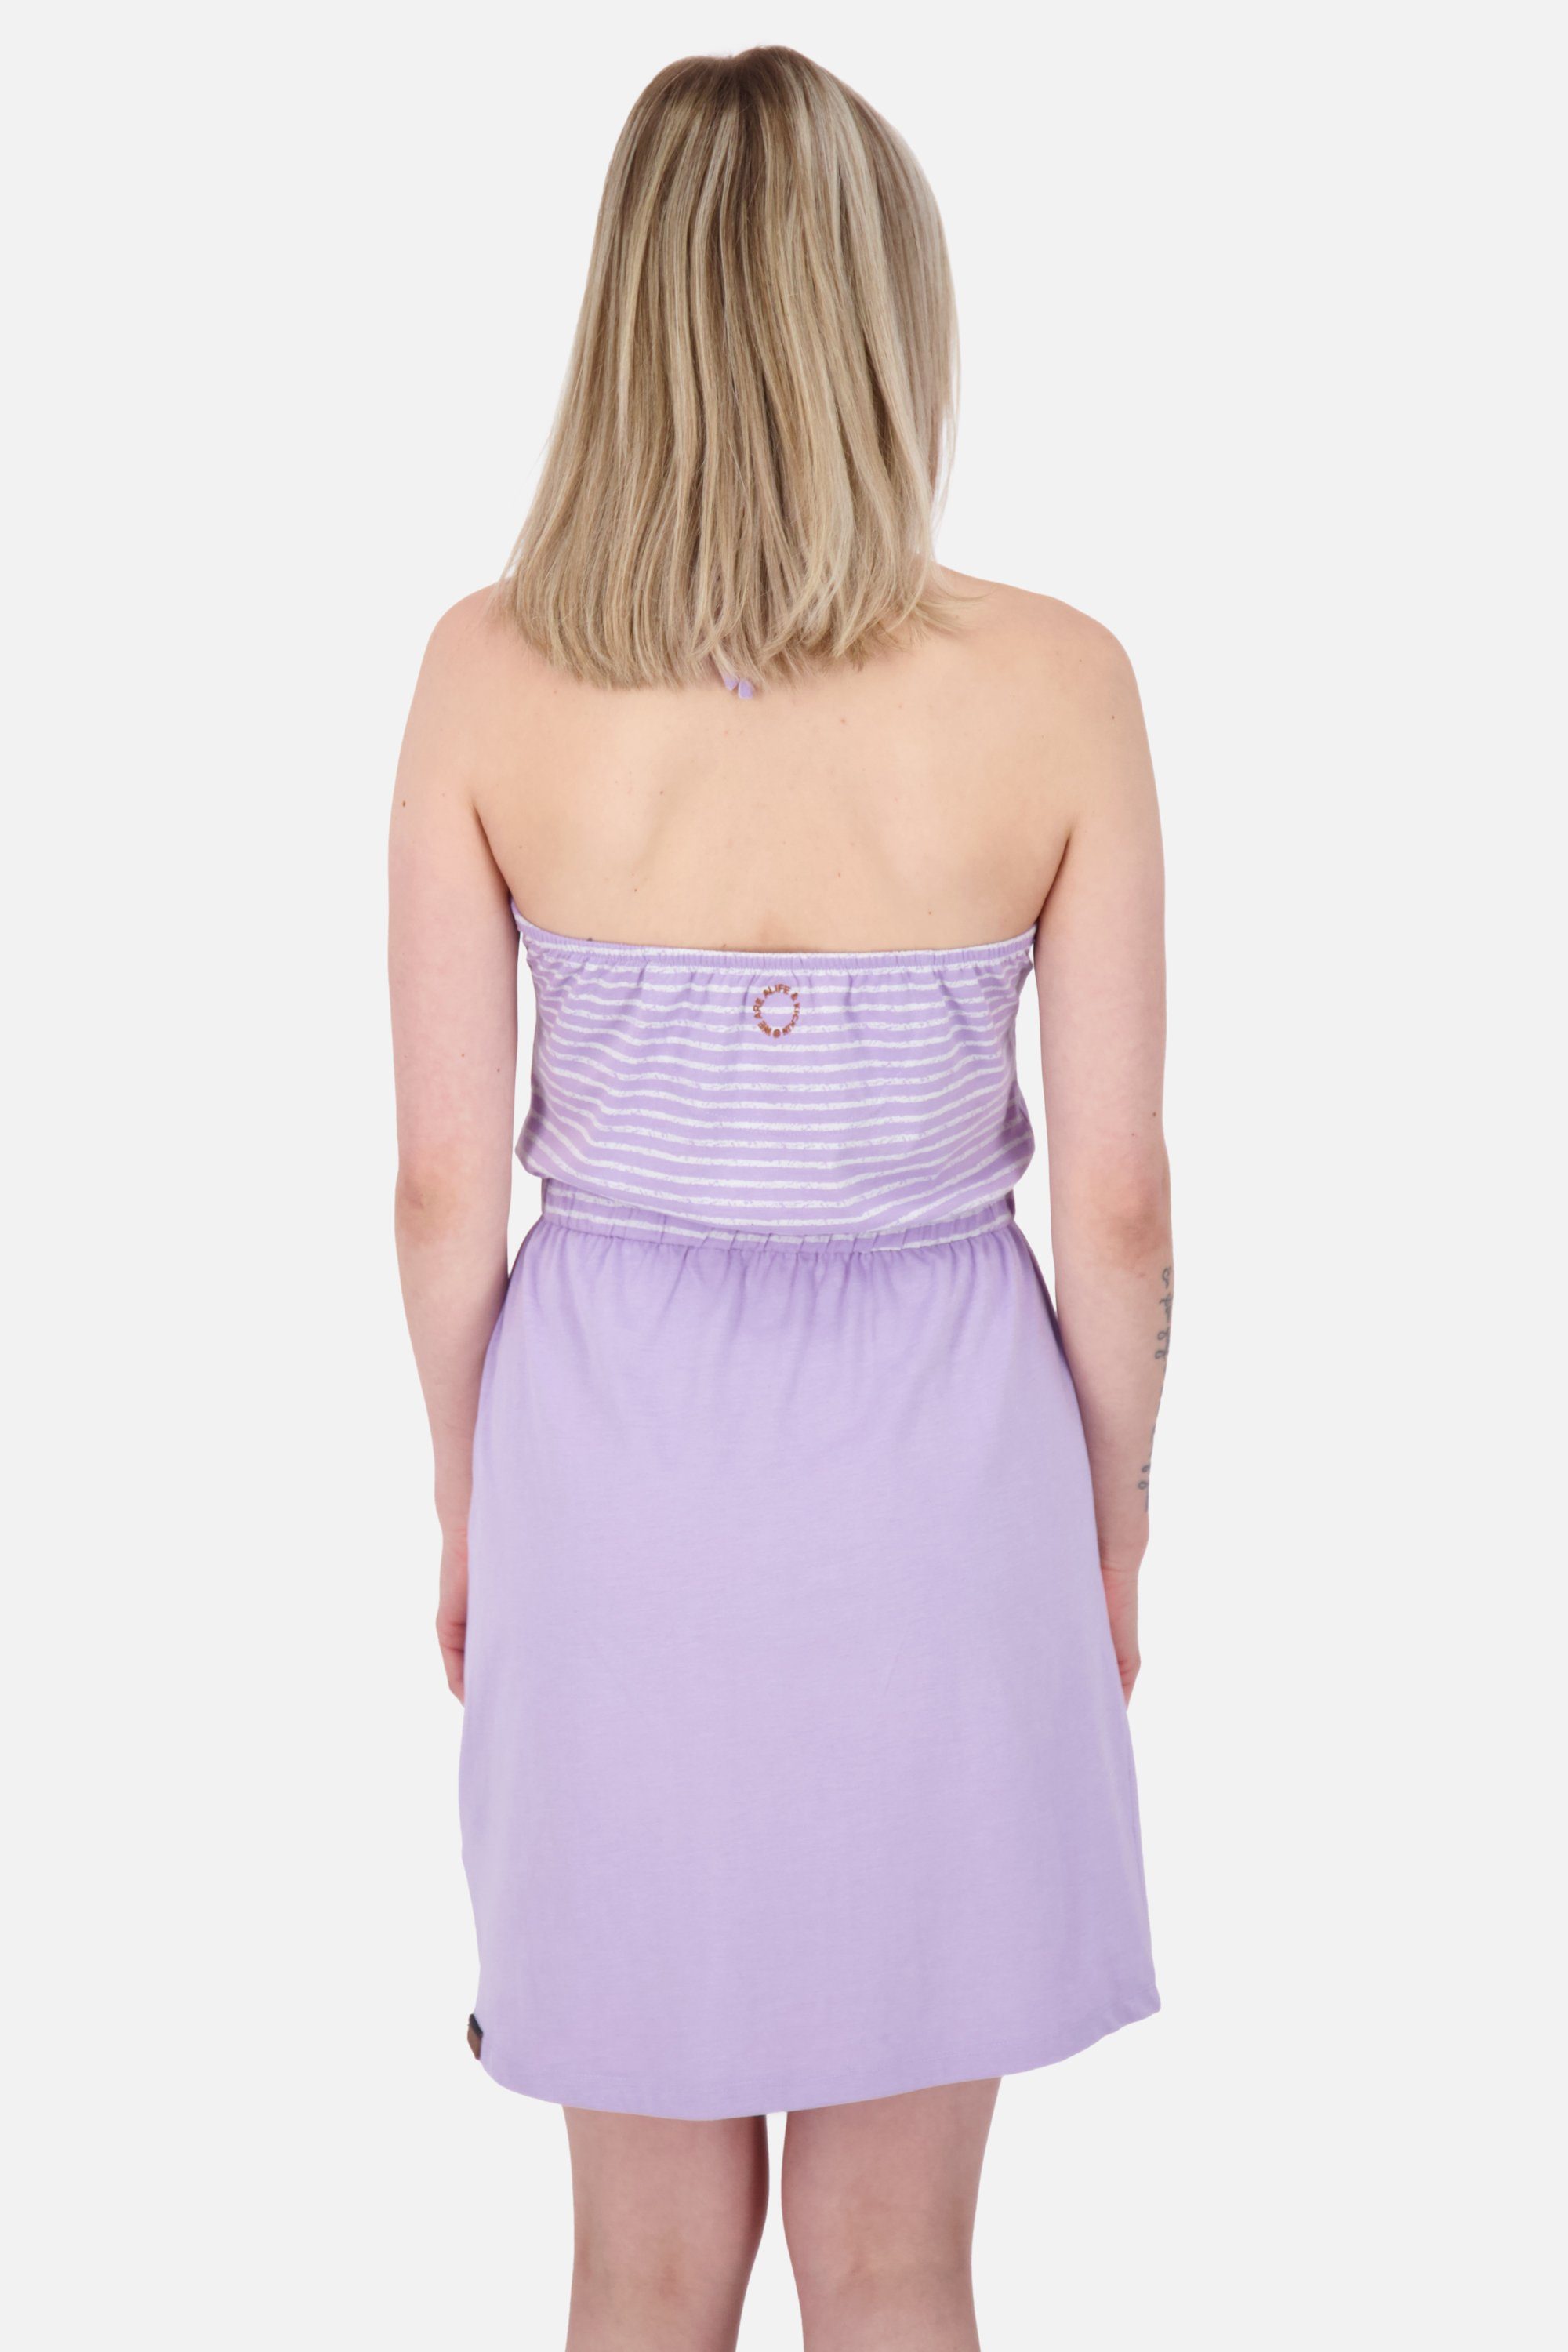 Alife & Dress VerenaAK Sleeveless Kickin Damen Sommerkleid Kleid Sommerkleid, digital lavender Z